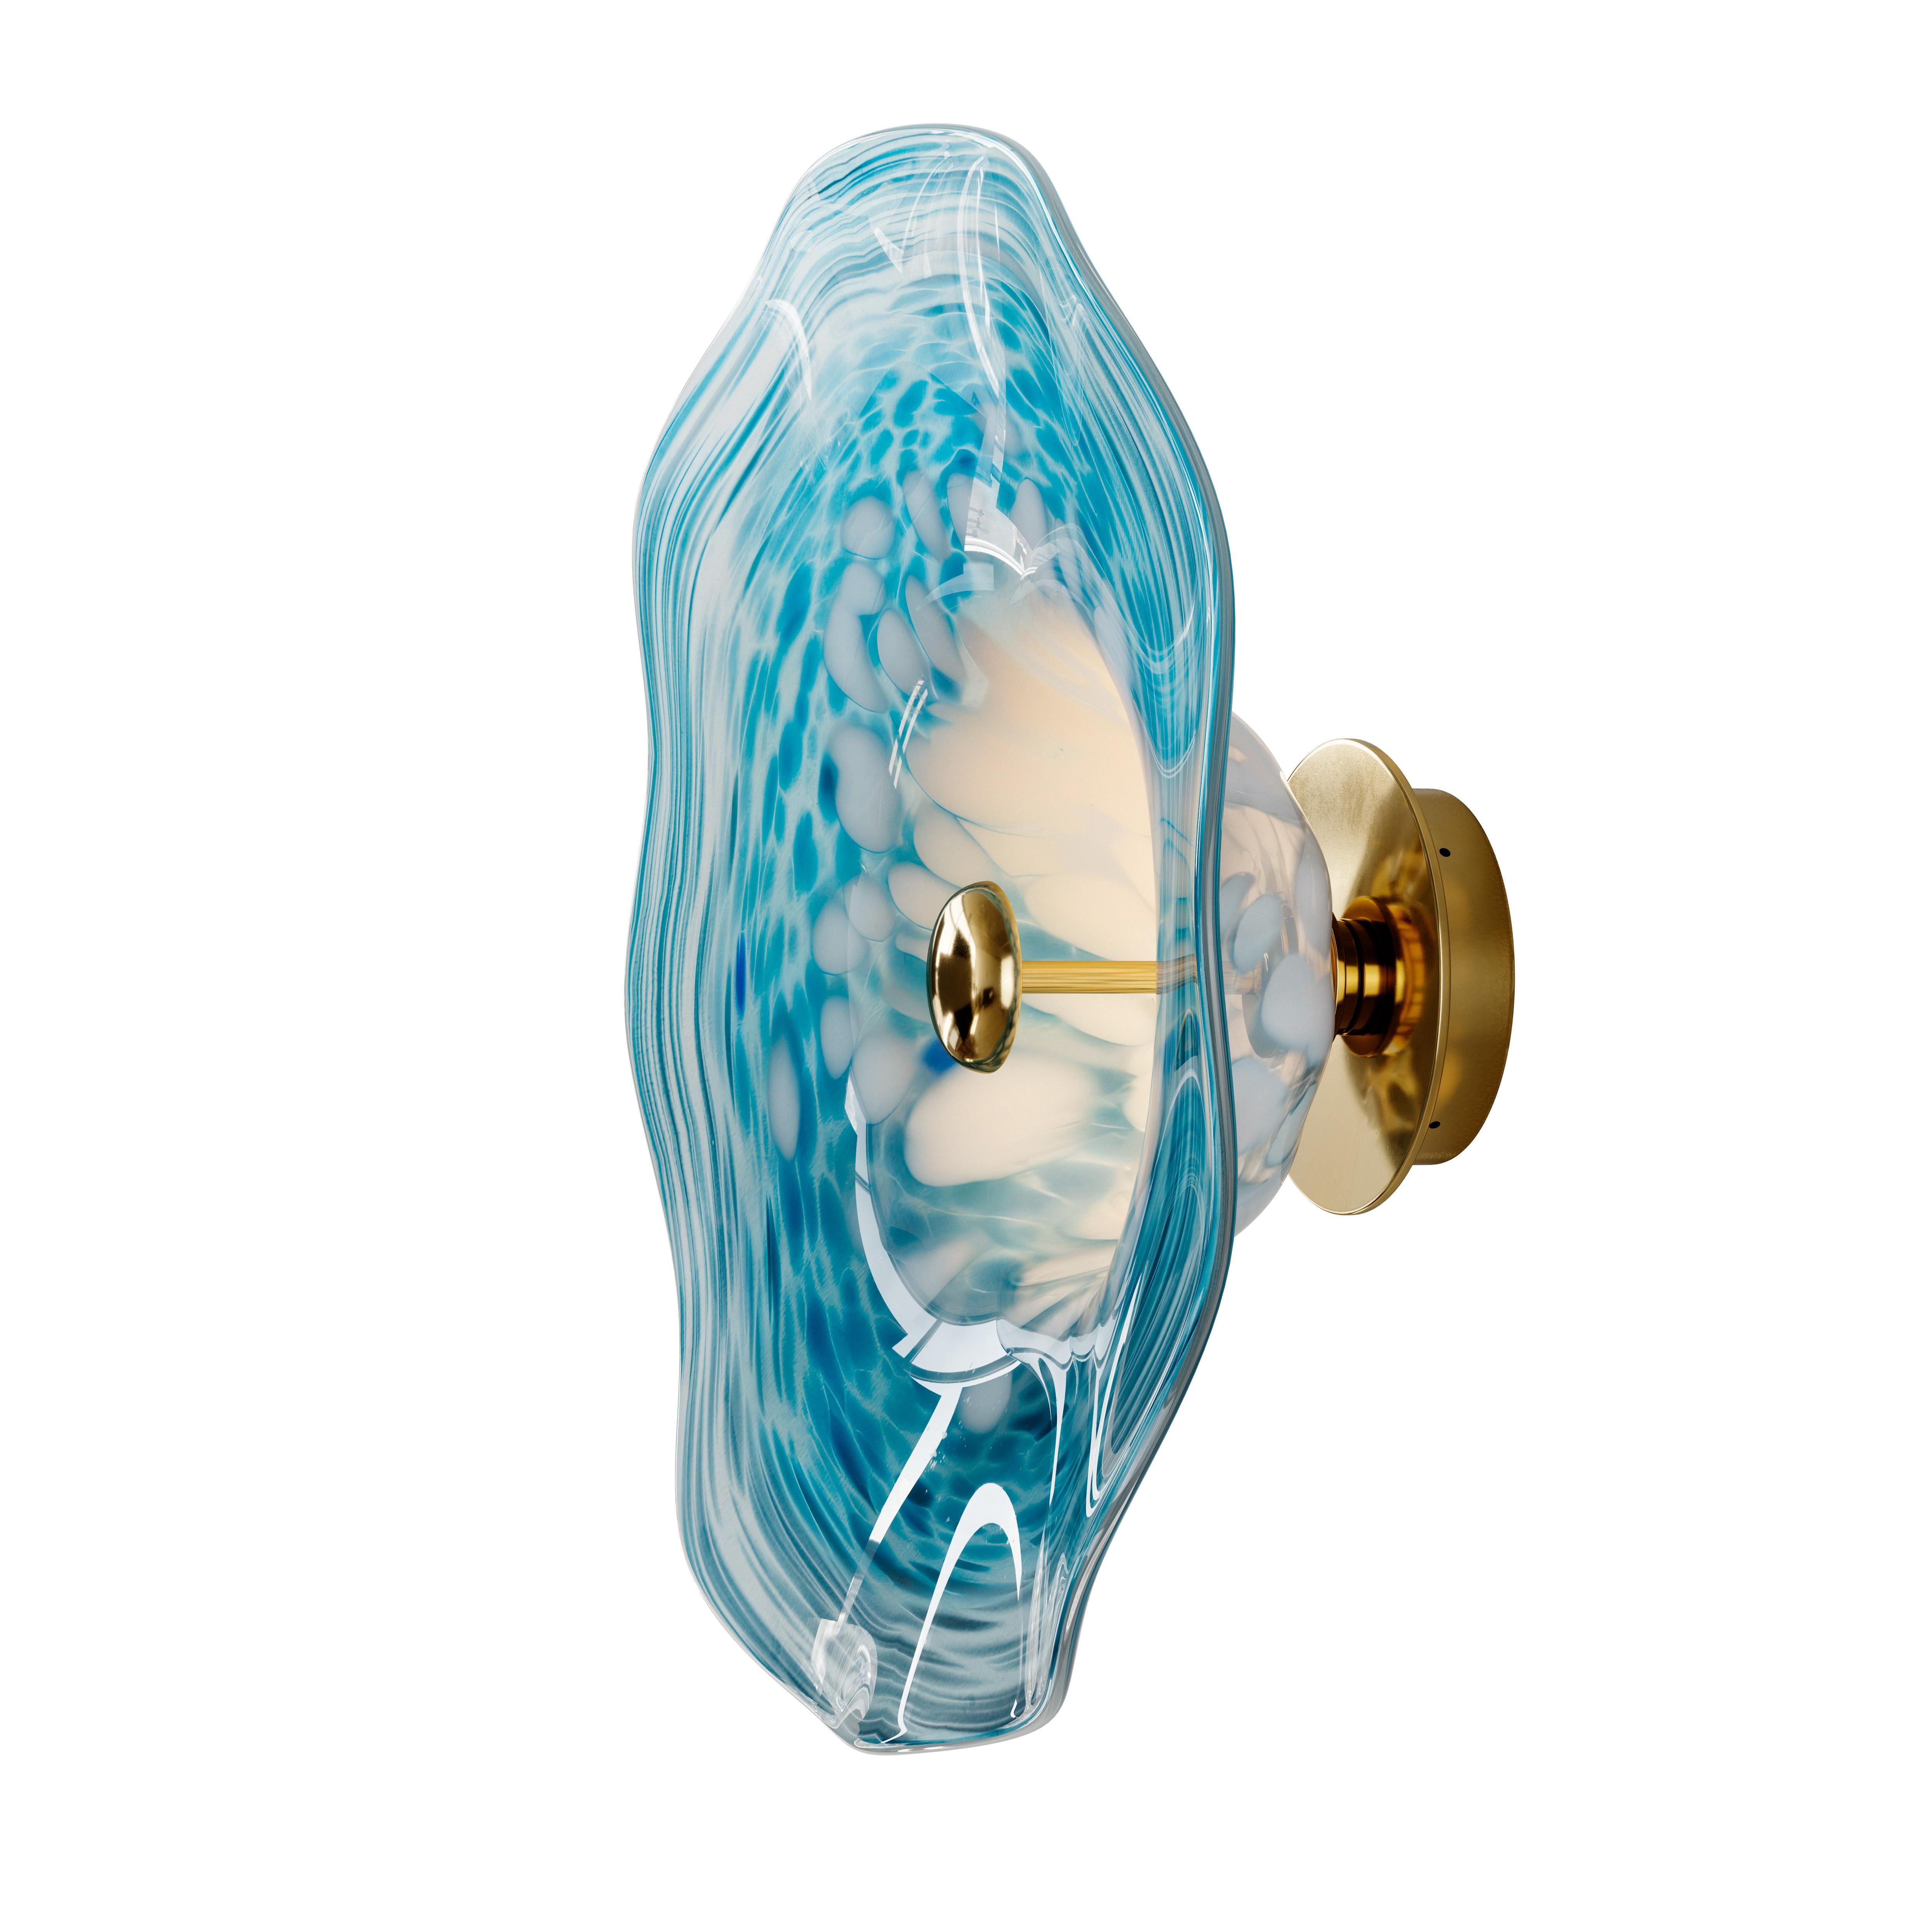 Perla ist von der Auster inspiriert, wobei die markante, organische Form des dekorativen, handgesponnenen Glasschirms die Muschel darstellt, während die zentrale Lichtquelle als Perle fungiert. Das Ergebnis ist eine weiche und anmutige Luminaire,